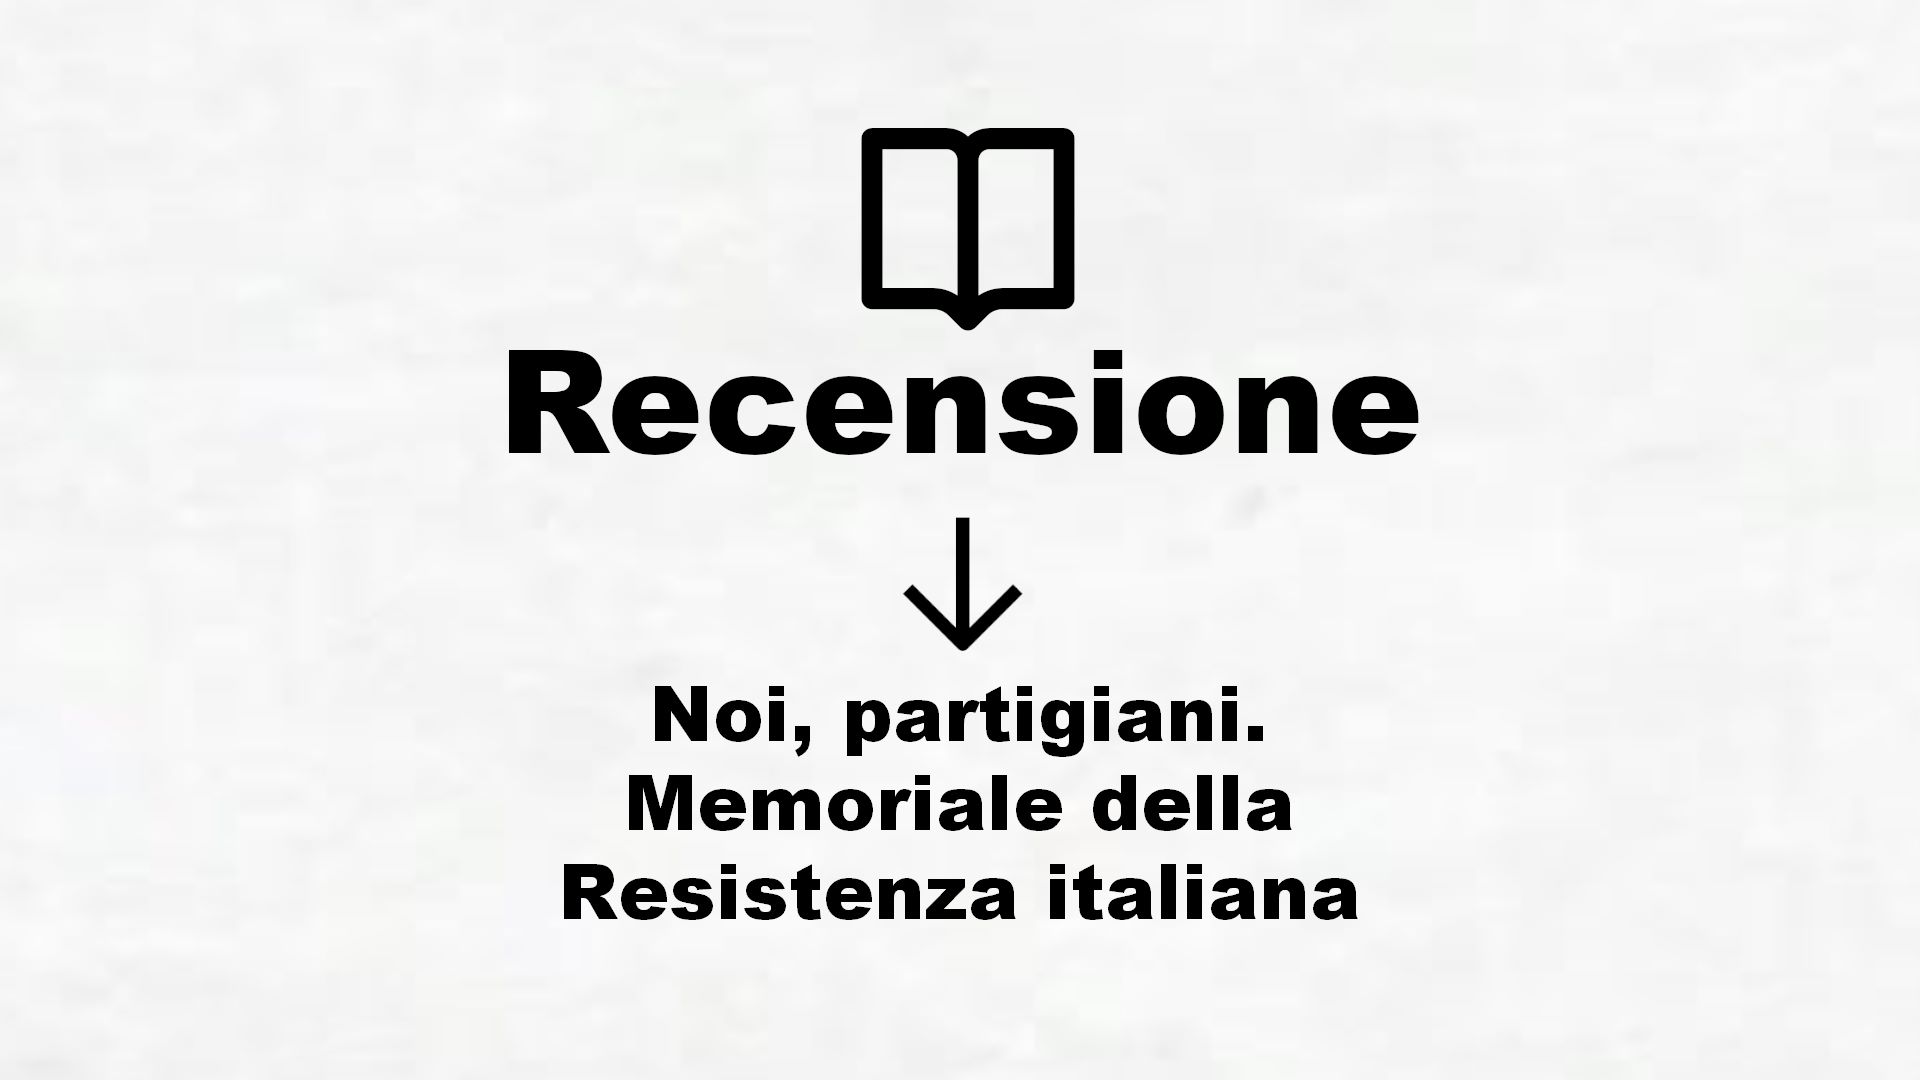 Noi, partigiani. Memoriale della Resistenza italiana – Recensione Libro